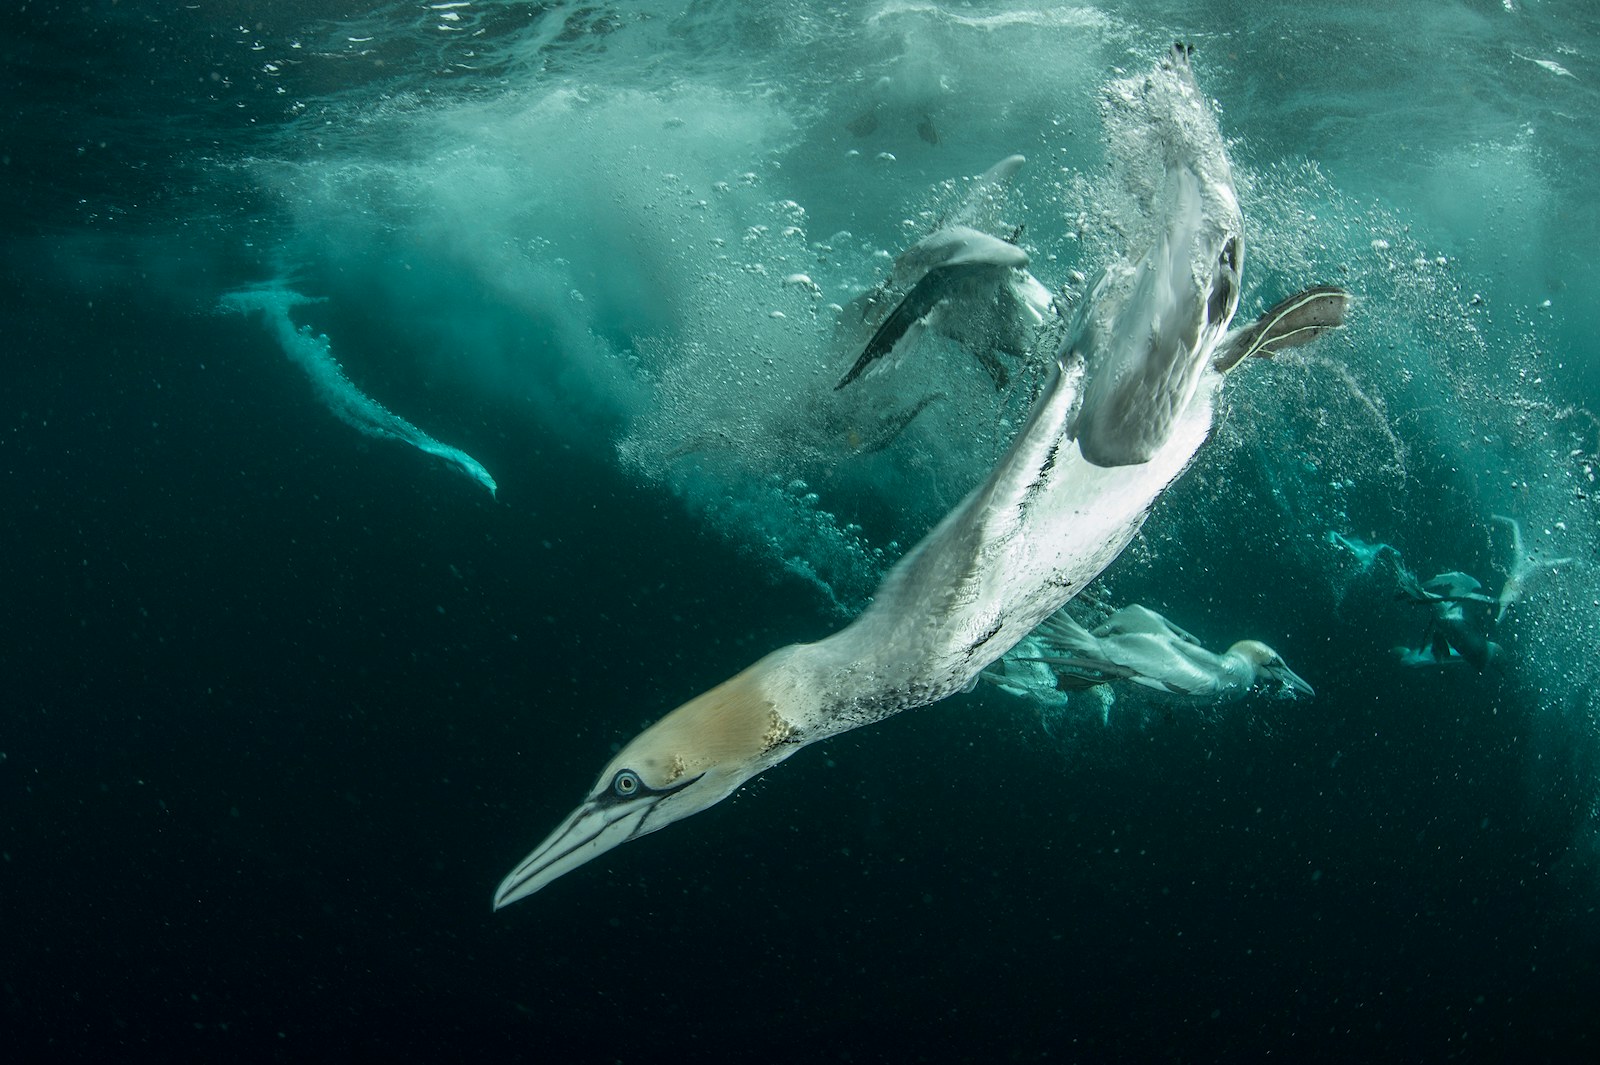 Rewild the seas gannet